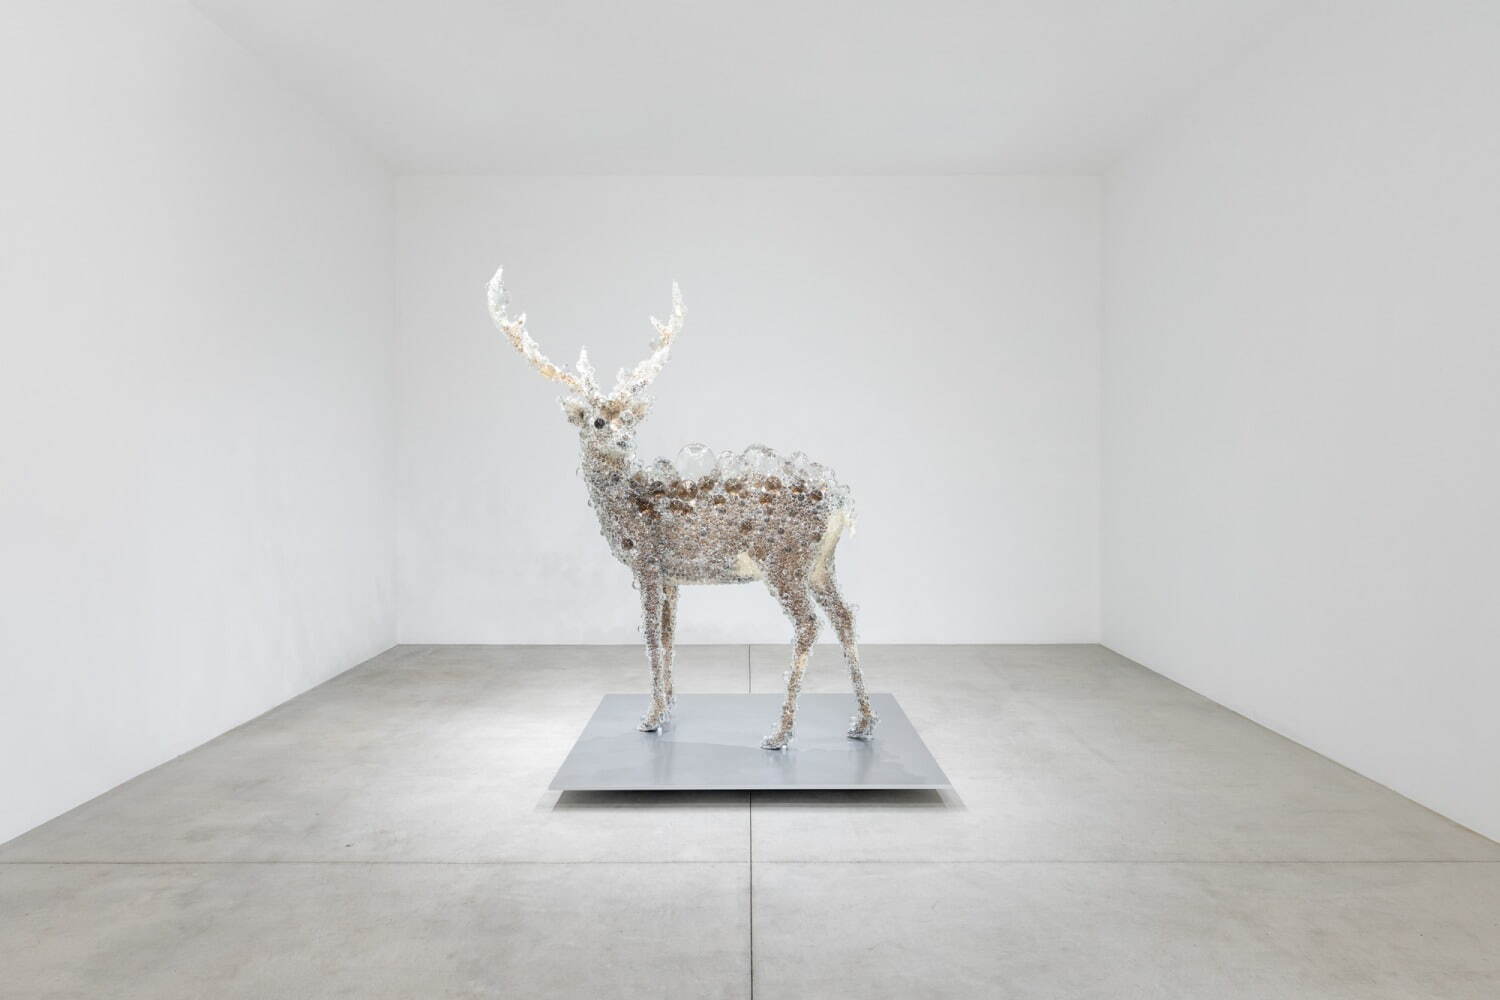 名和晃平《PixCell-Deer#52》
撮影：小山田邦哉
2018, mixed media, H2173 ×W1896 ×D1500mm